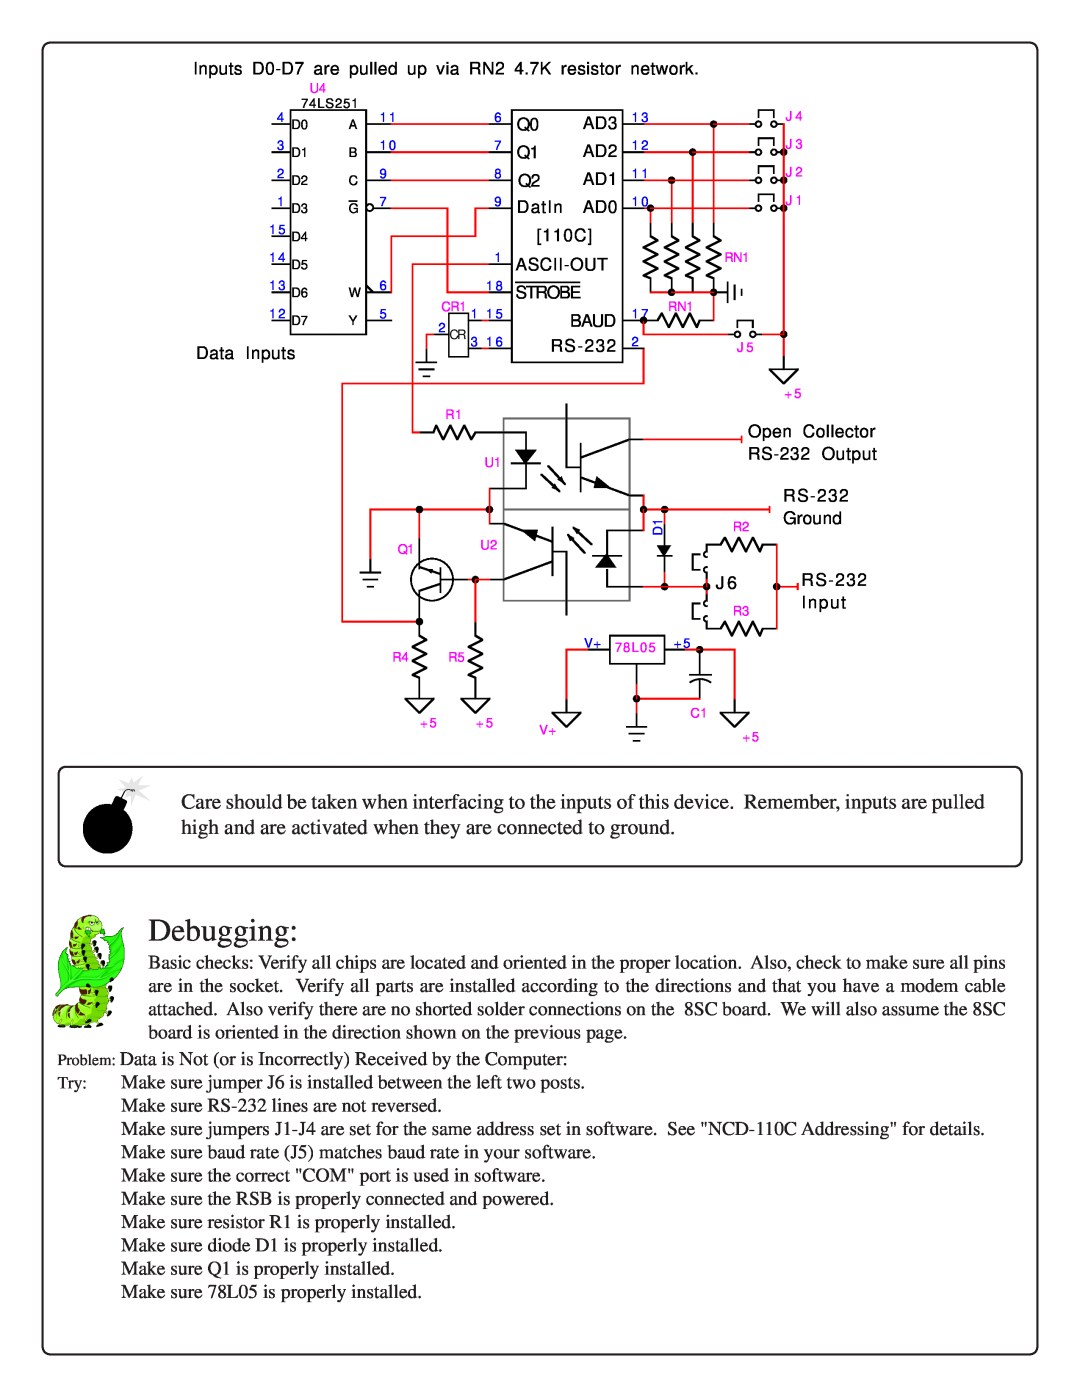 IBM RS-232 manual Debugging 